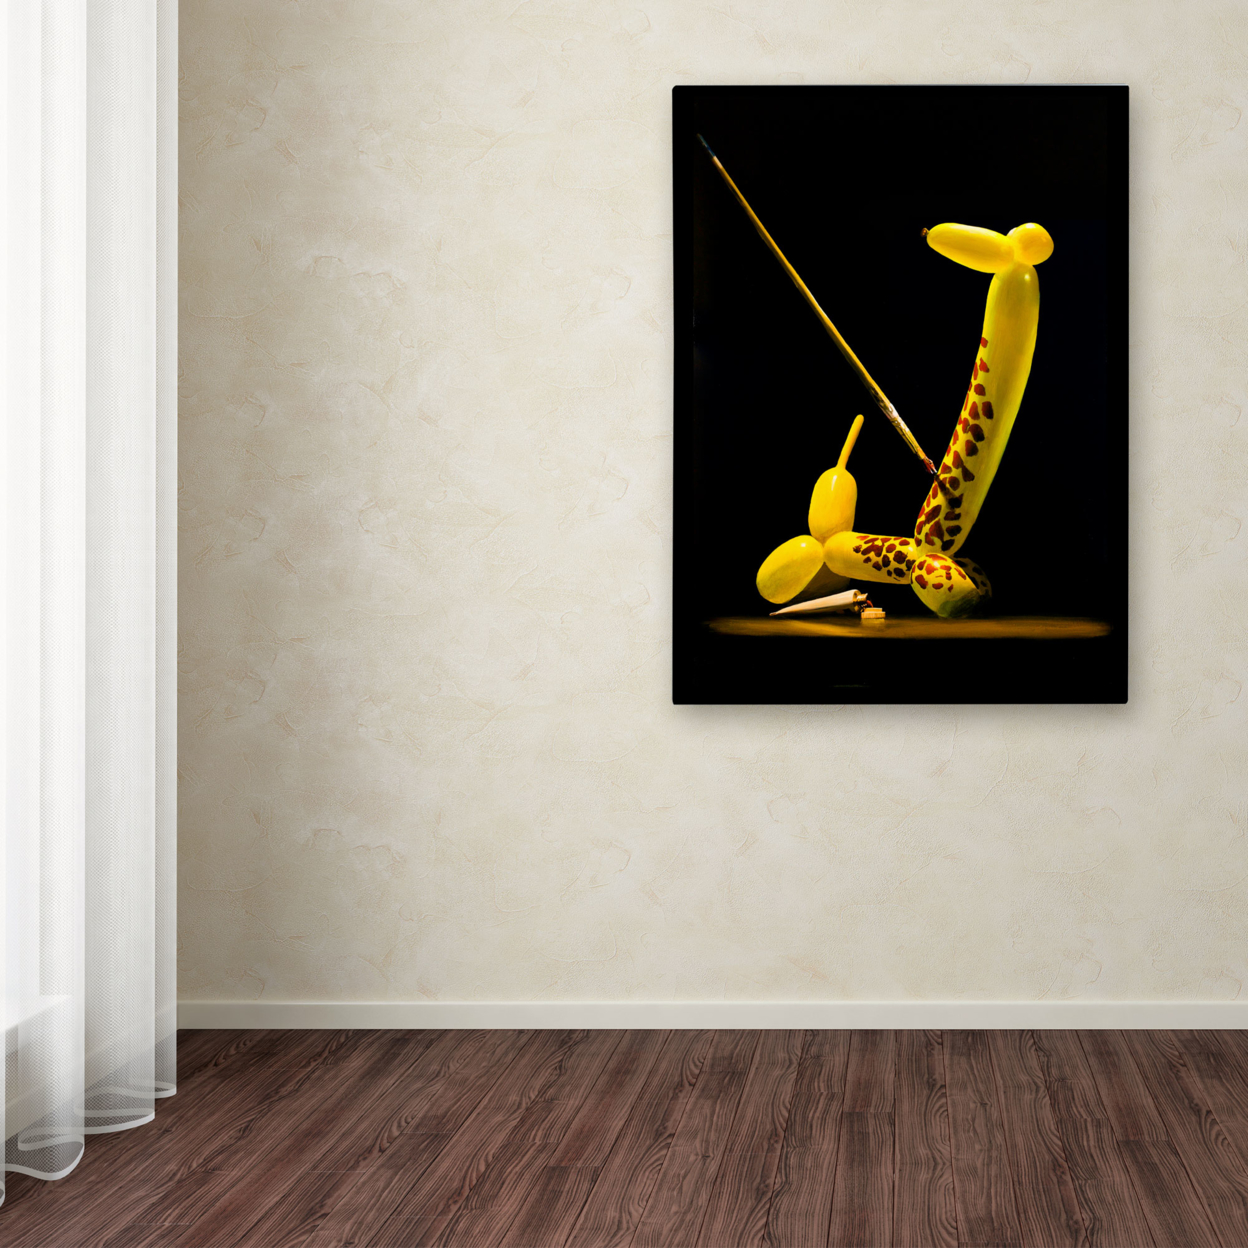 Roderick Stevens 'Balloon Giraffe' Canvas Wall Art 35 X 47 Inches